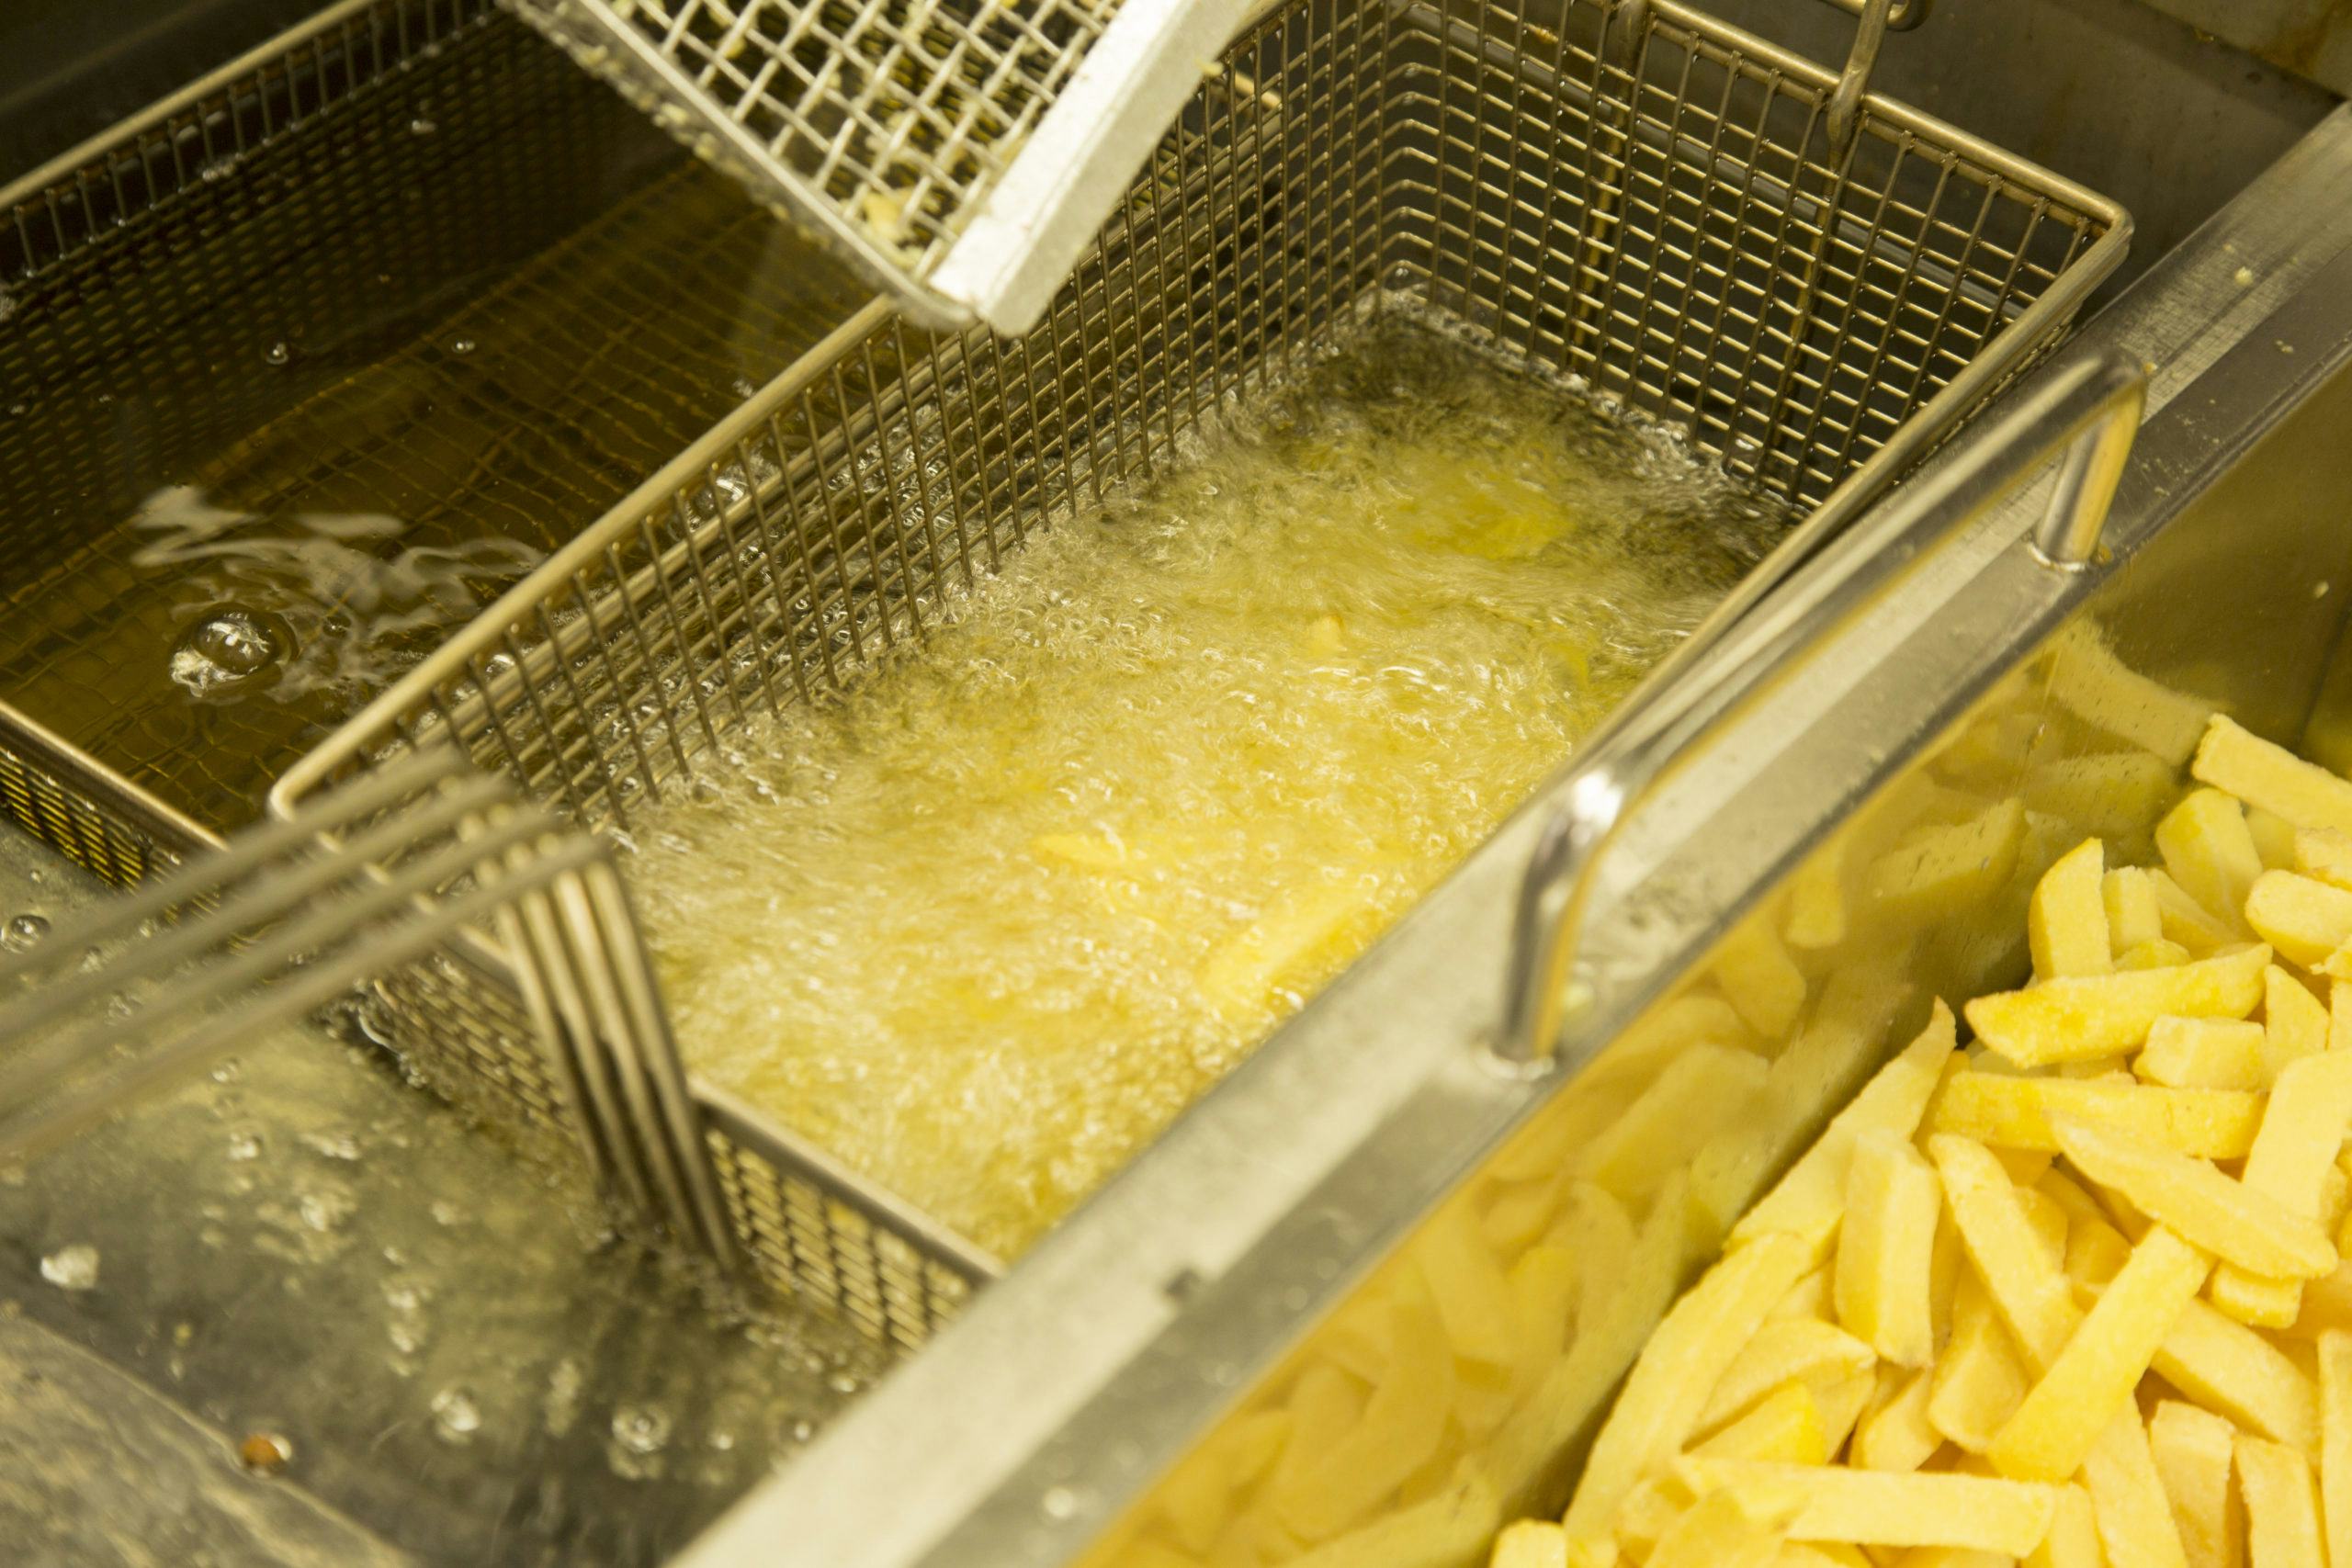 Jaar gratis friet voor gouden tip na overval op cafetaria